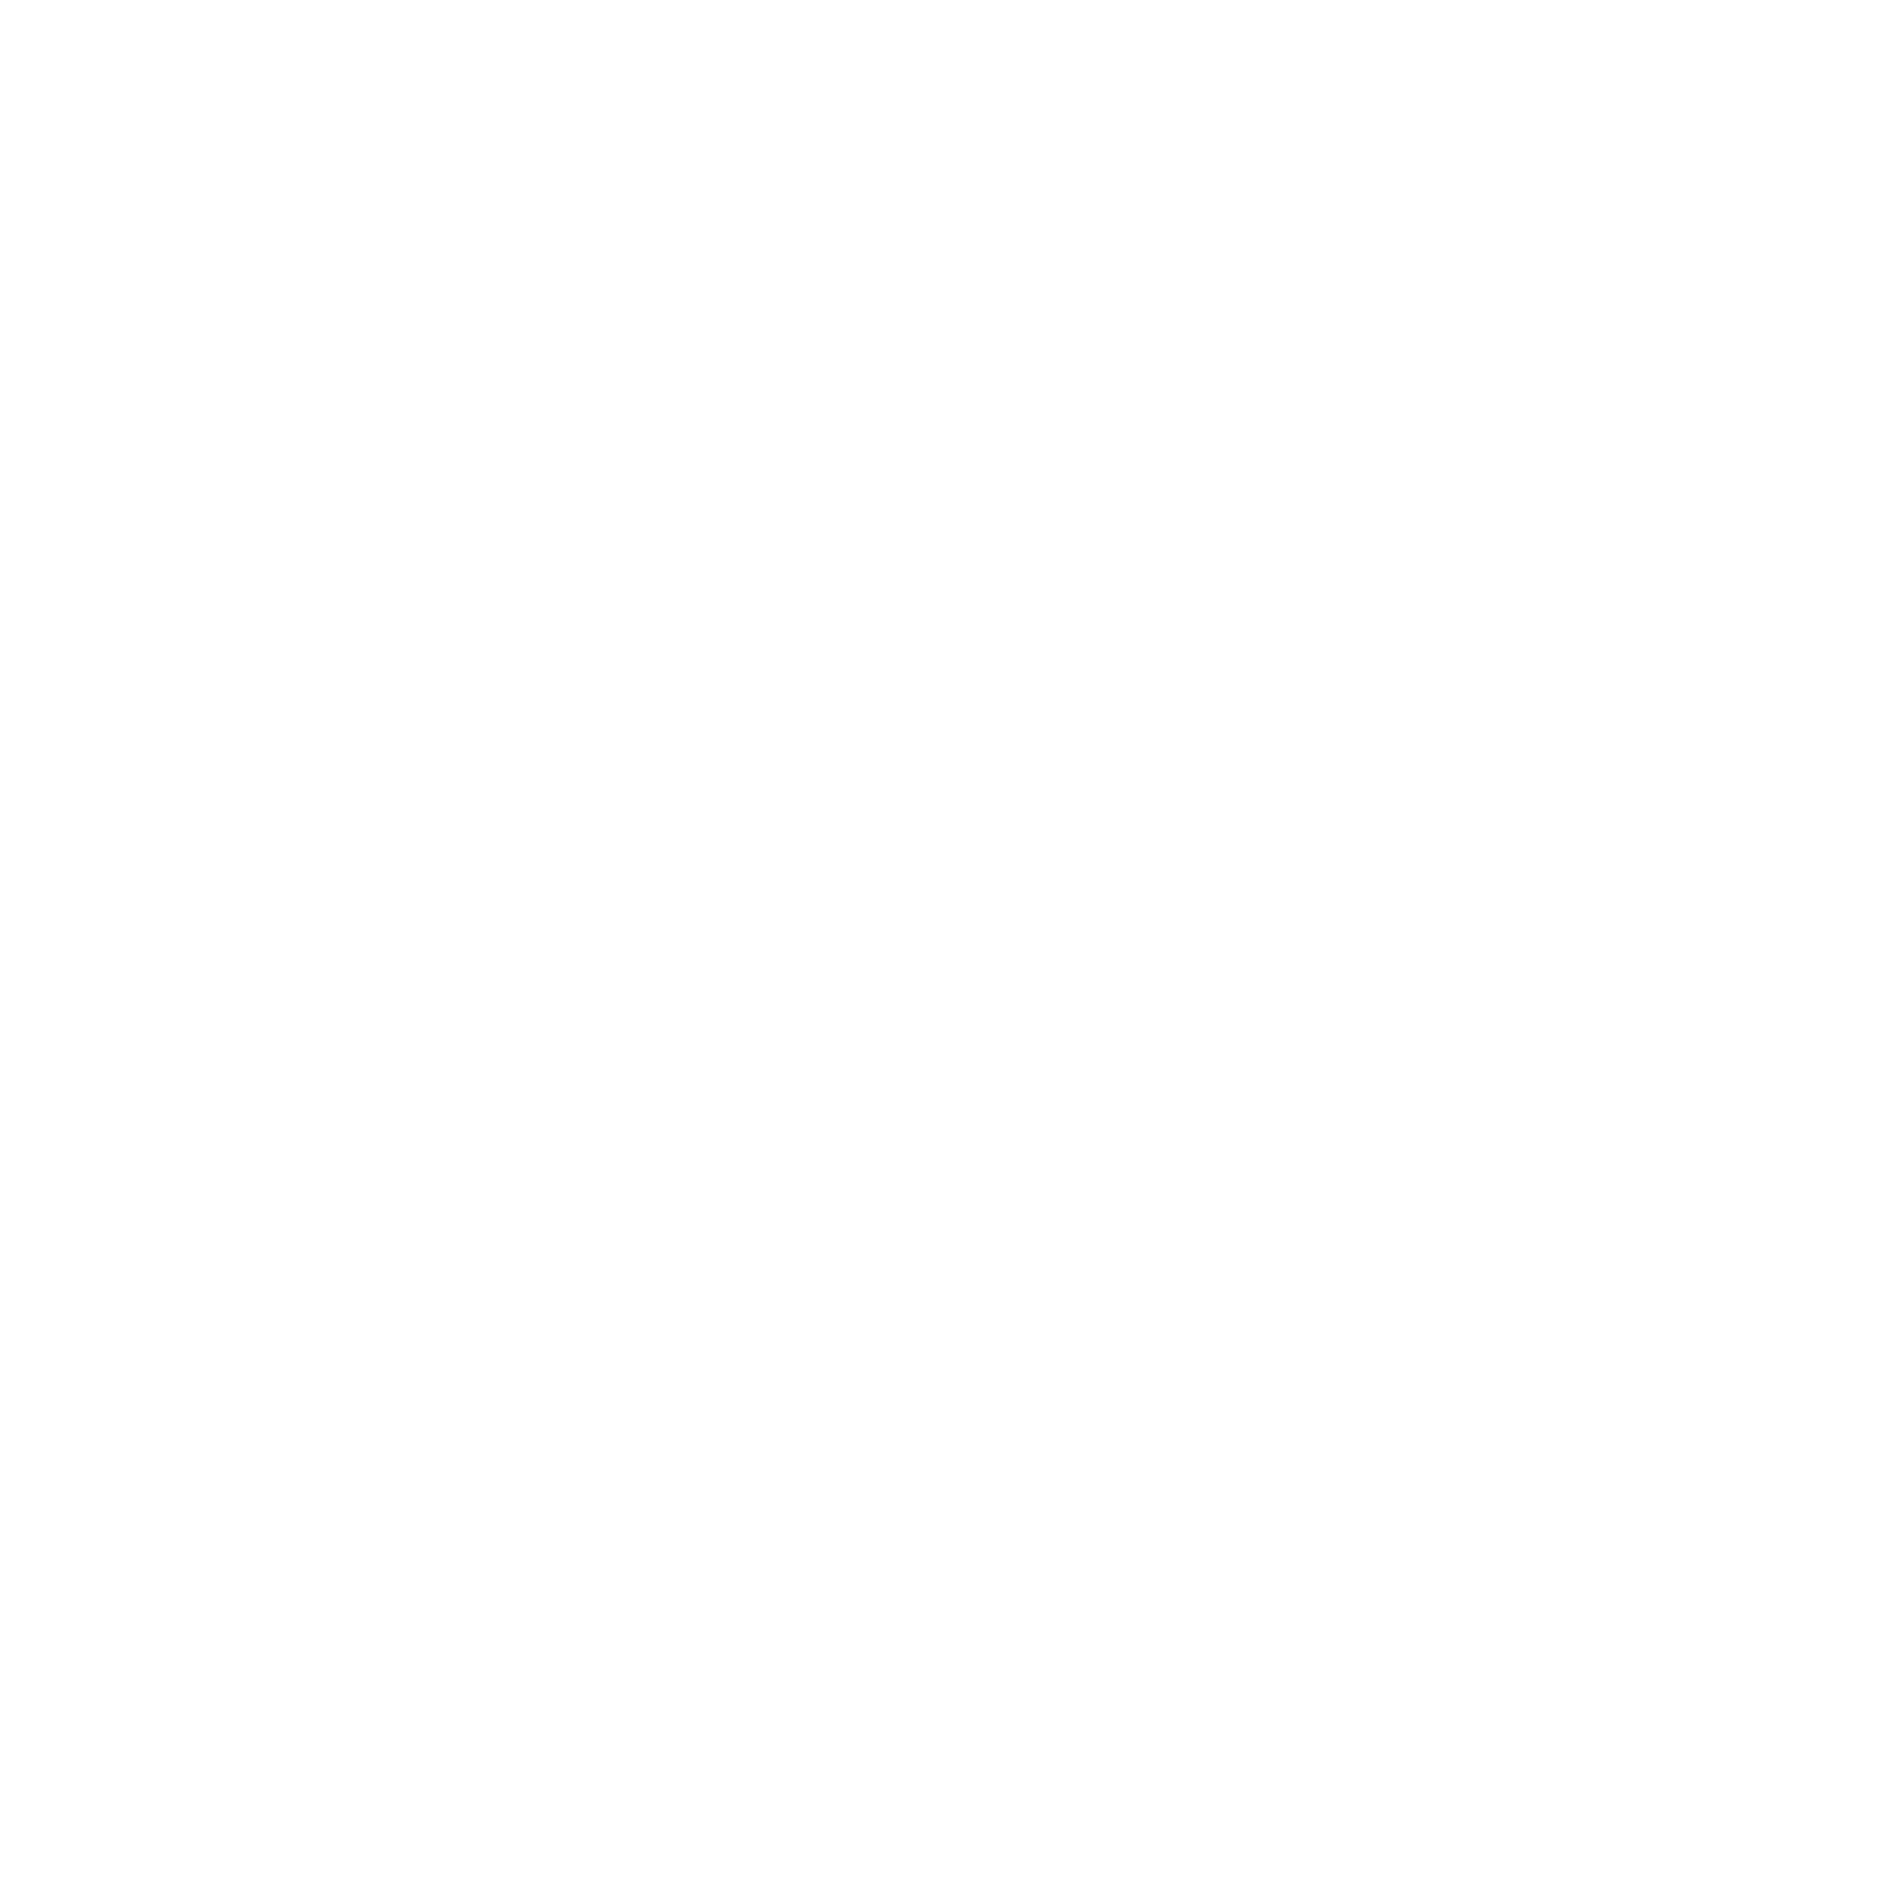 Casamania Horm